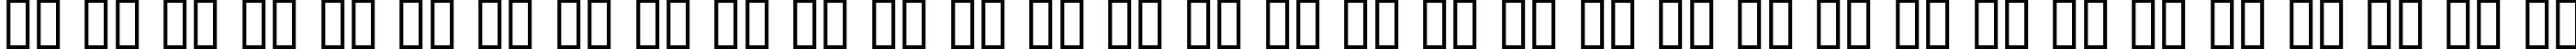 Пример написания русского алфавита шрифтом Dumbledor 3